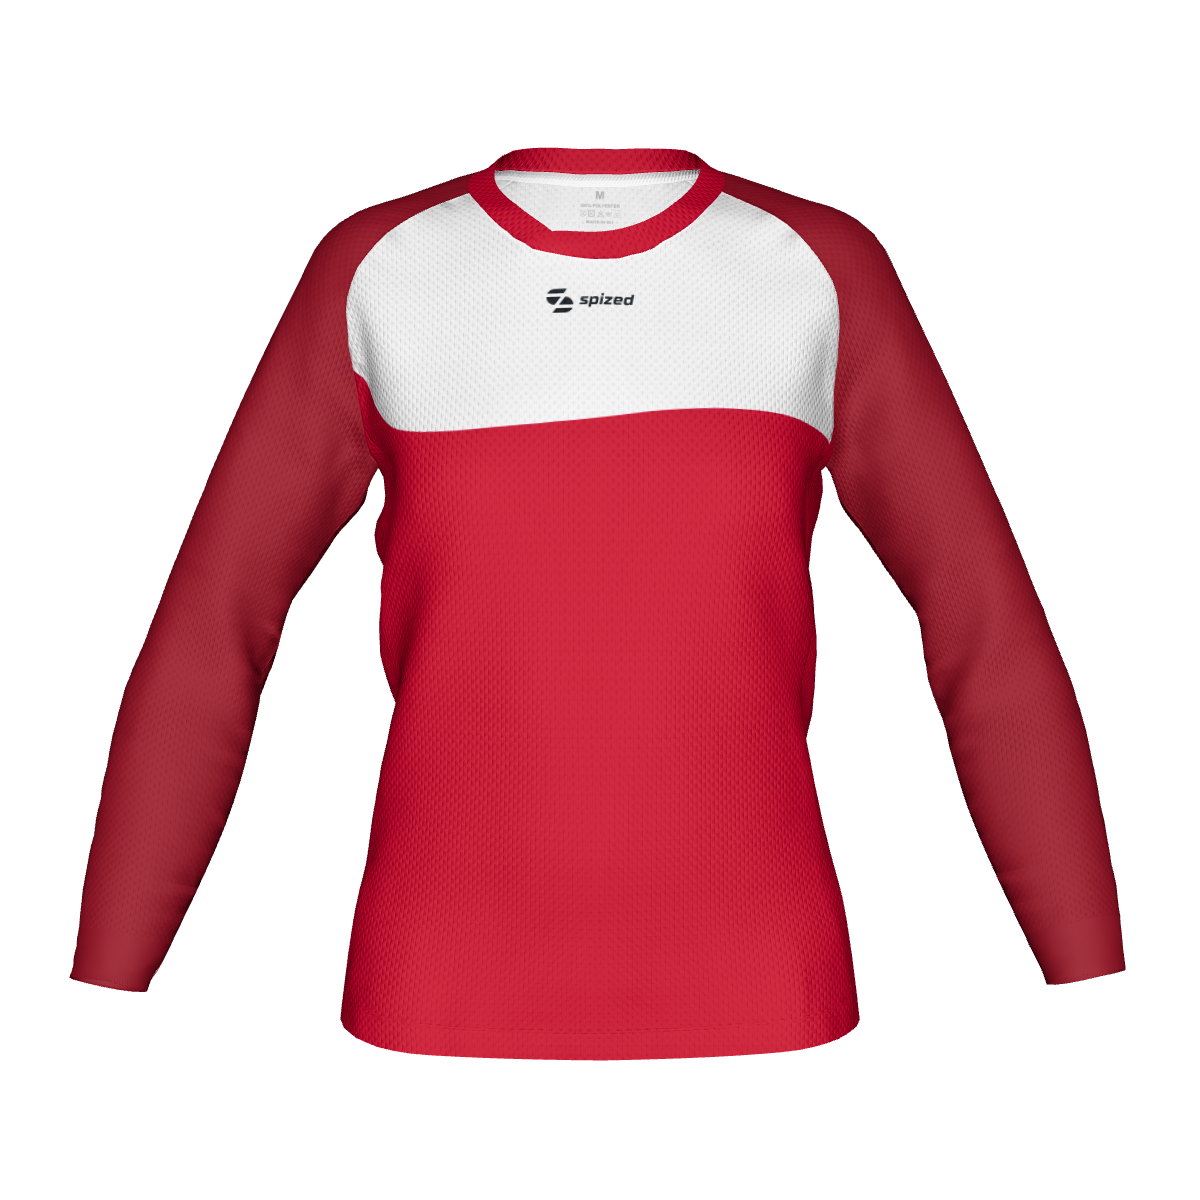 Drammen women’s handball goalkeeper’s jersey